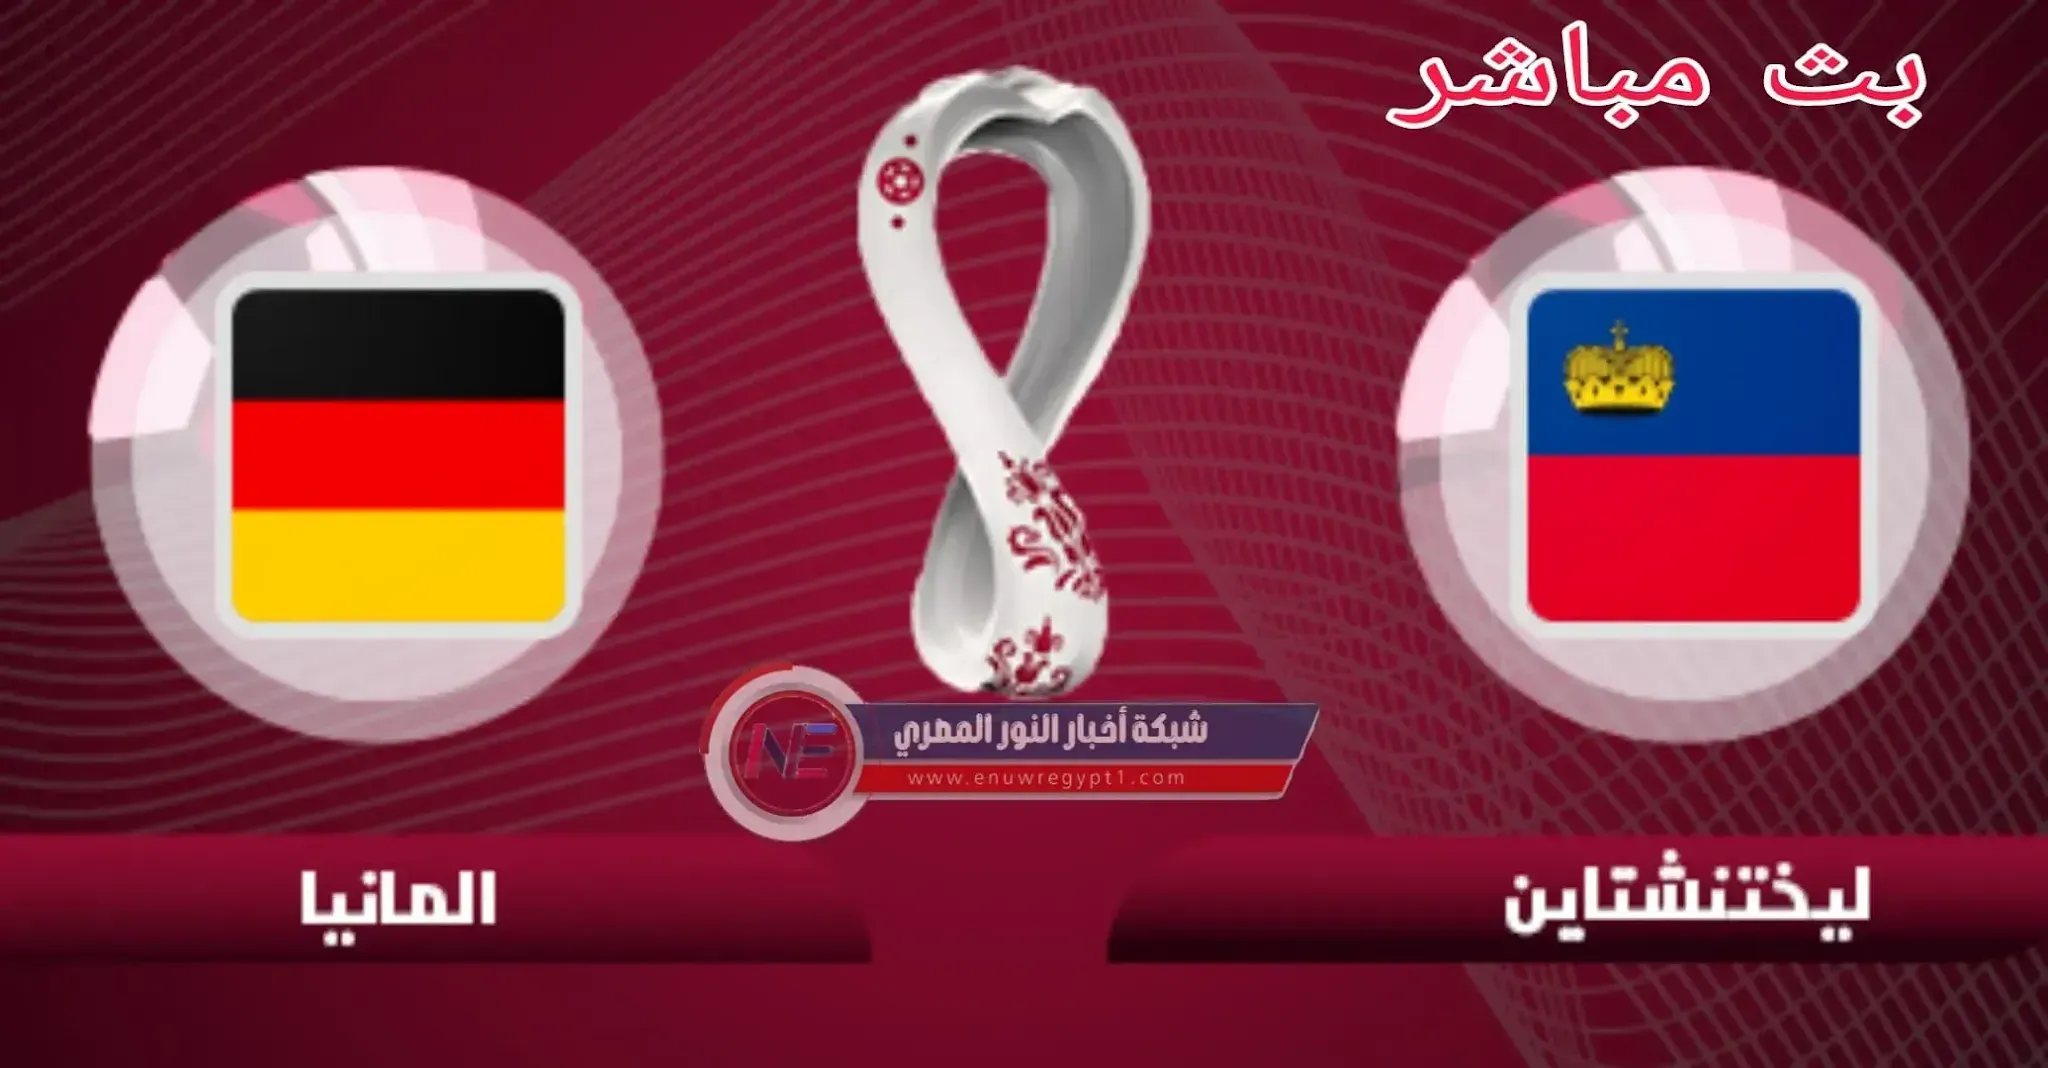 بث مباشر يلا شوت يوتيوب || مشاهدة مباراة ألمانيا و ليشتنشتاين بث مباشر اليوم 11-11-2021 في تصفيات أوروبا المؤهلة الي كأس العالم بجودة عالية